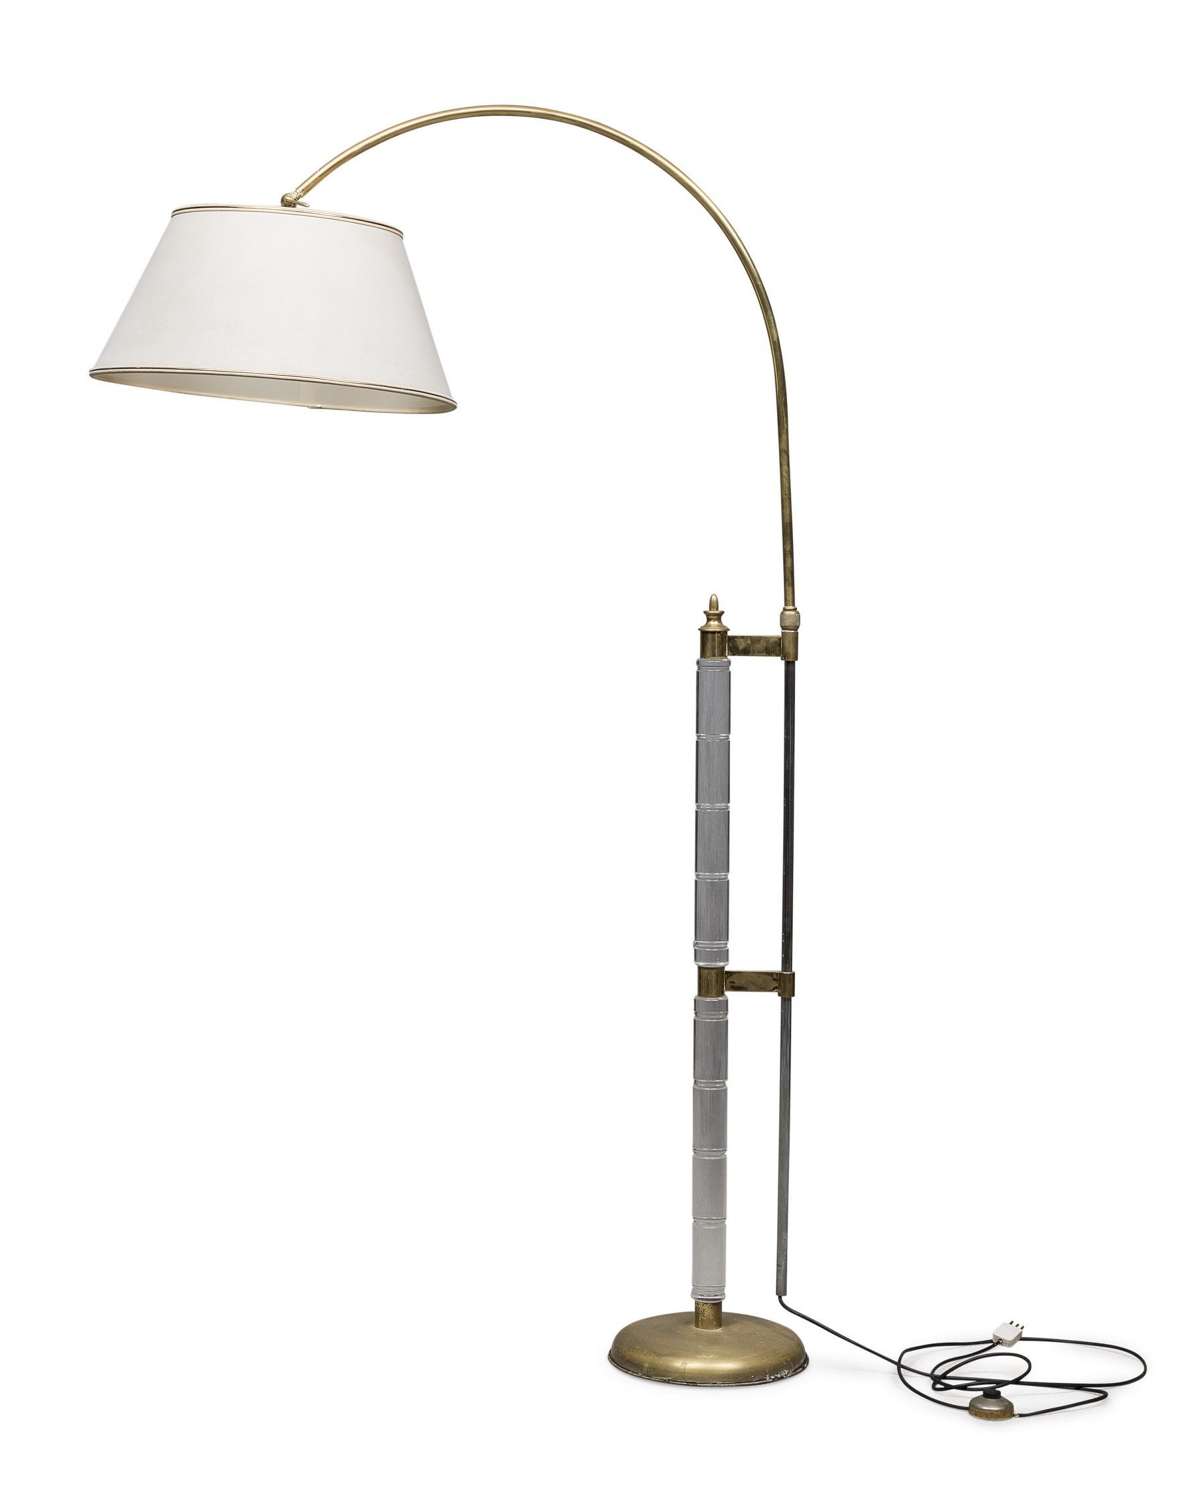 Arc floor lamp by Sciolari